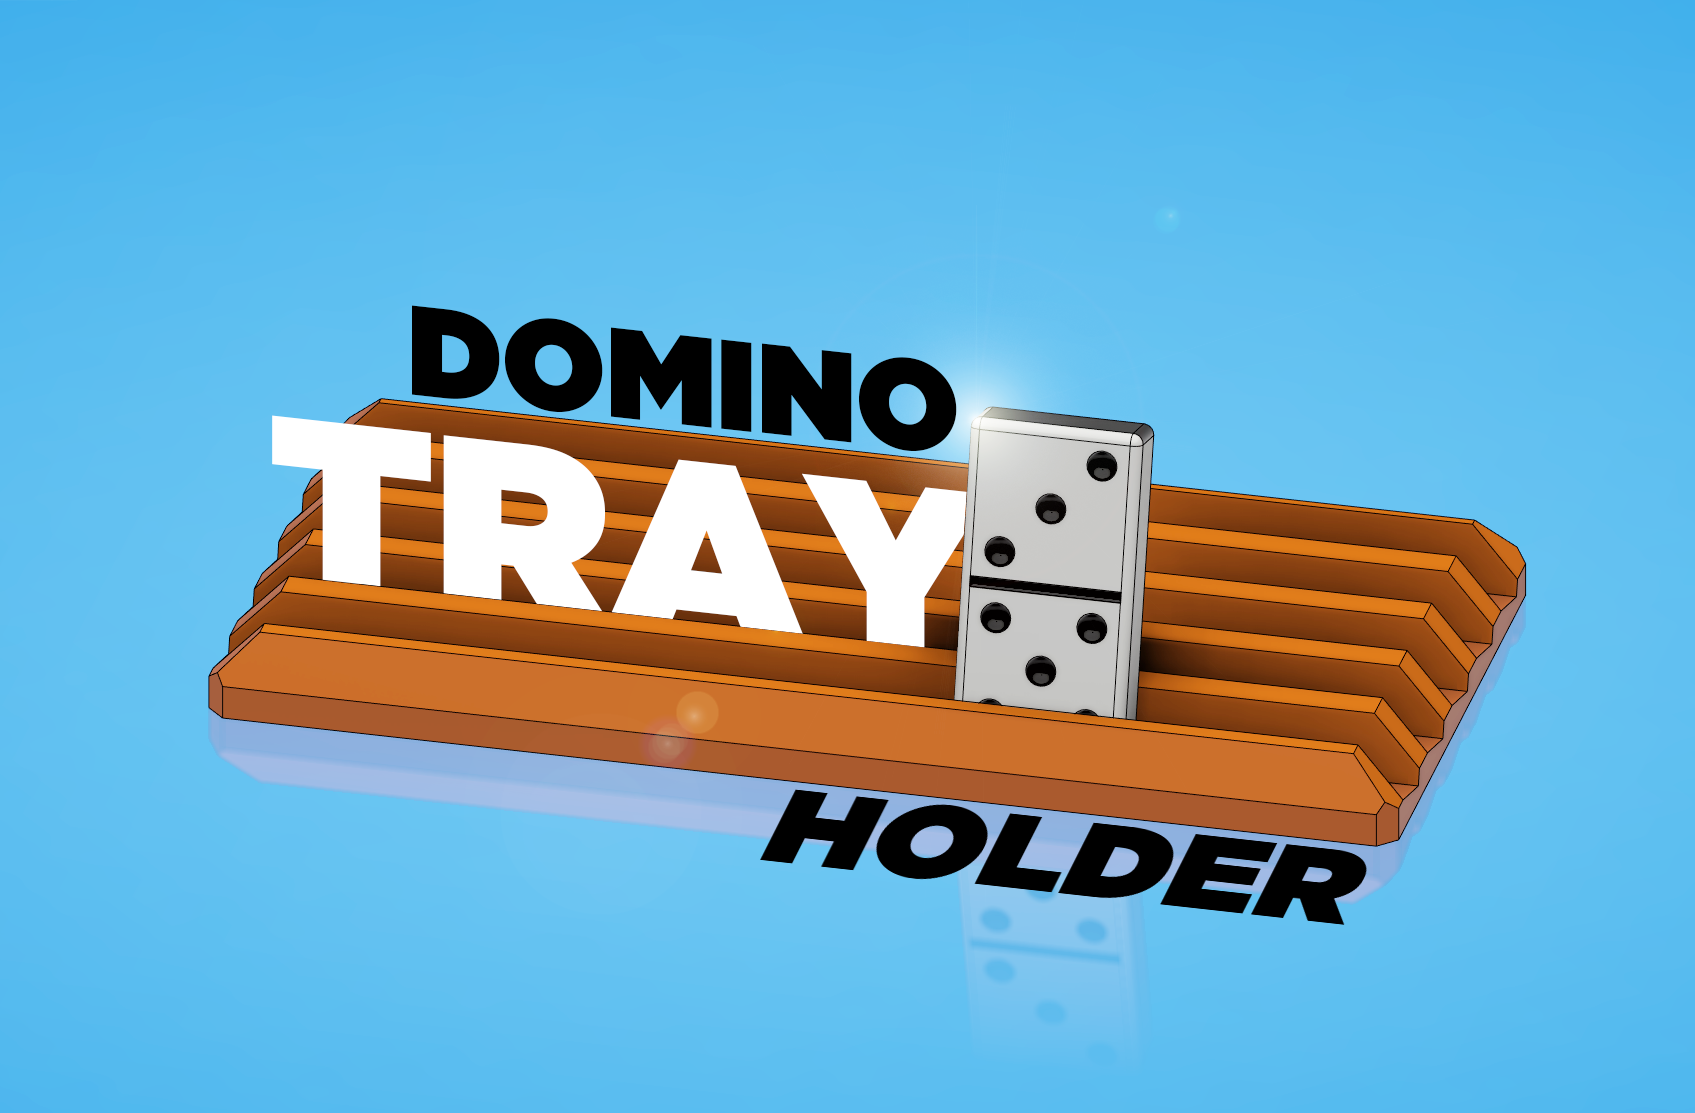 Domino Tray Holder